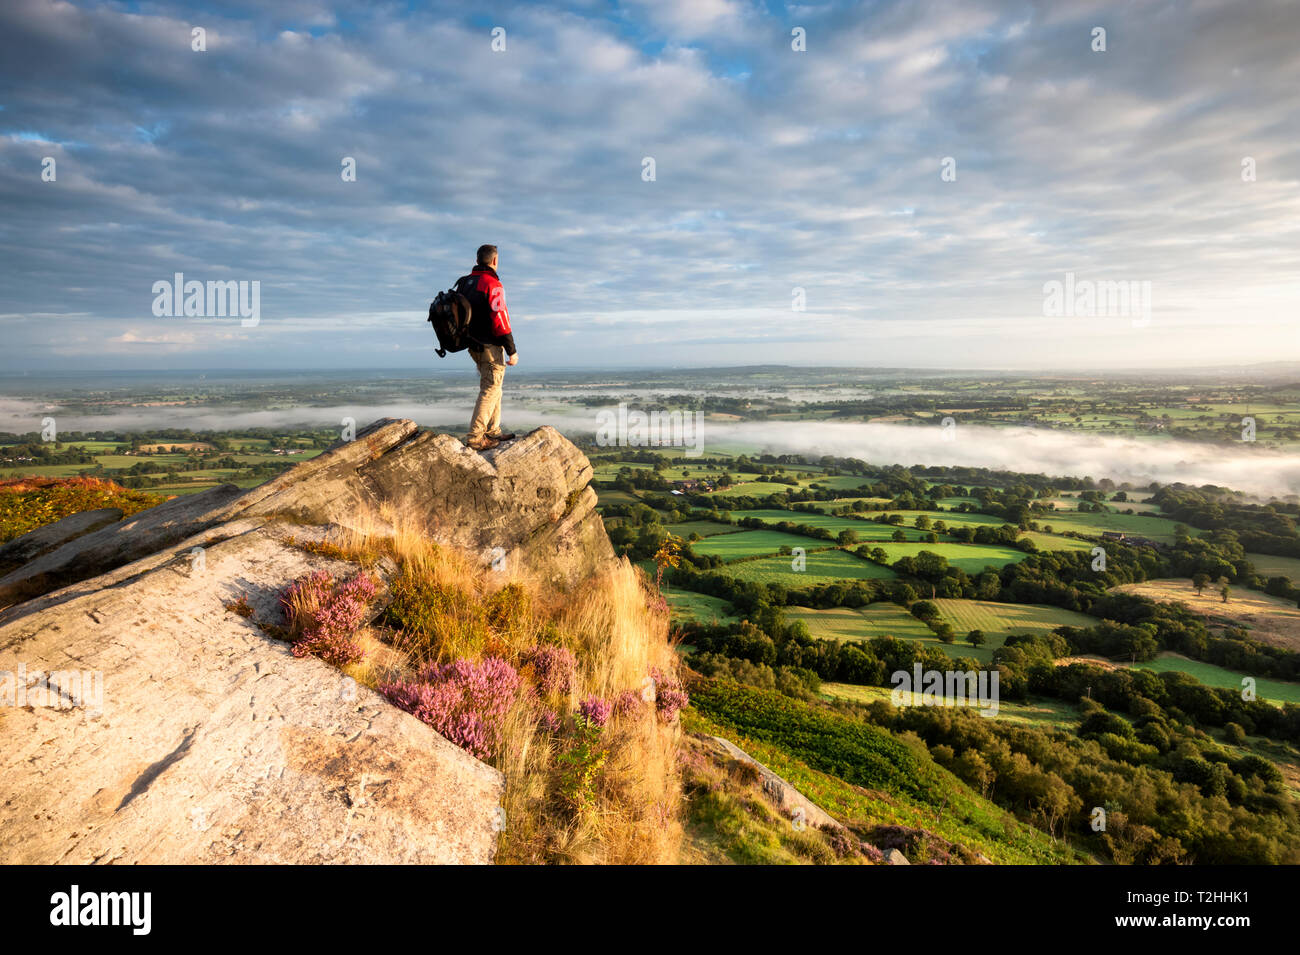 Randonneur sur rocher au-dessus des plaines du Cheshire, Cloudside près de Crewe, Cheshire, Angleterre, Royaume-Uni, Europe Banque D'Images